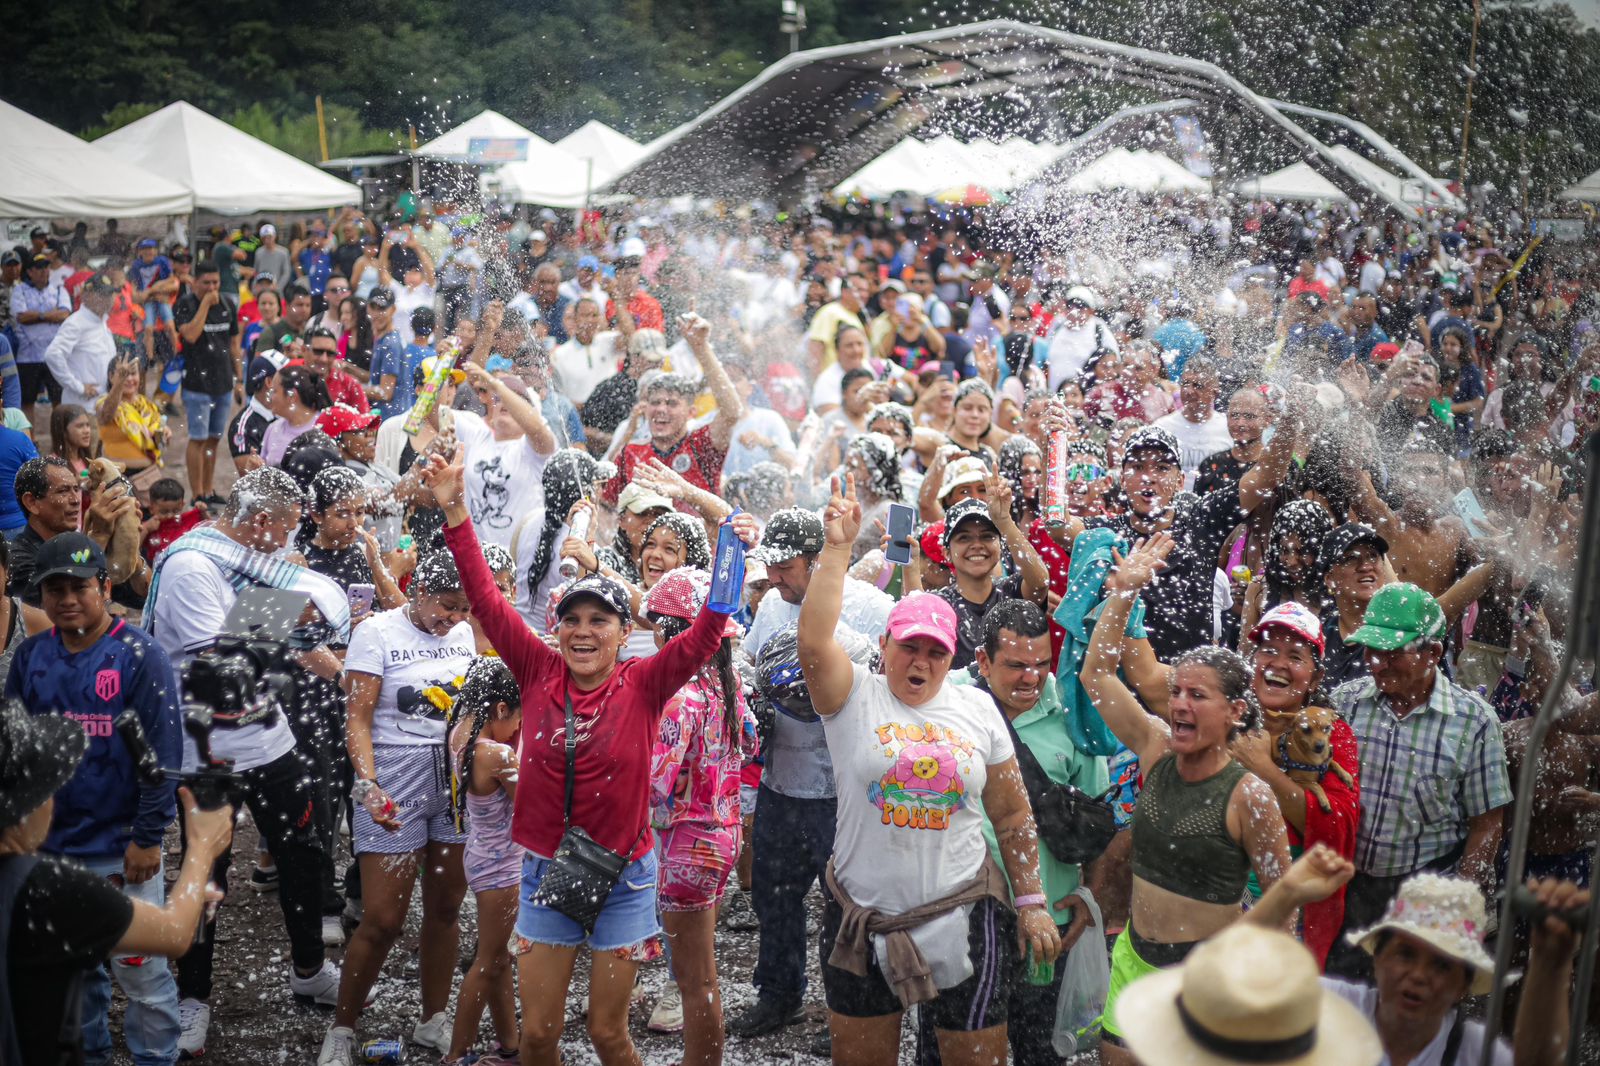 Festival de Verano del río Guatiquía se hará cada año, anunció alcalde de Villavicencio 1